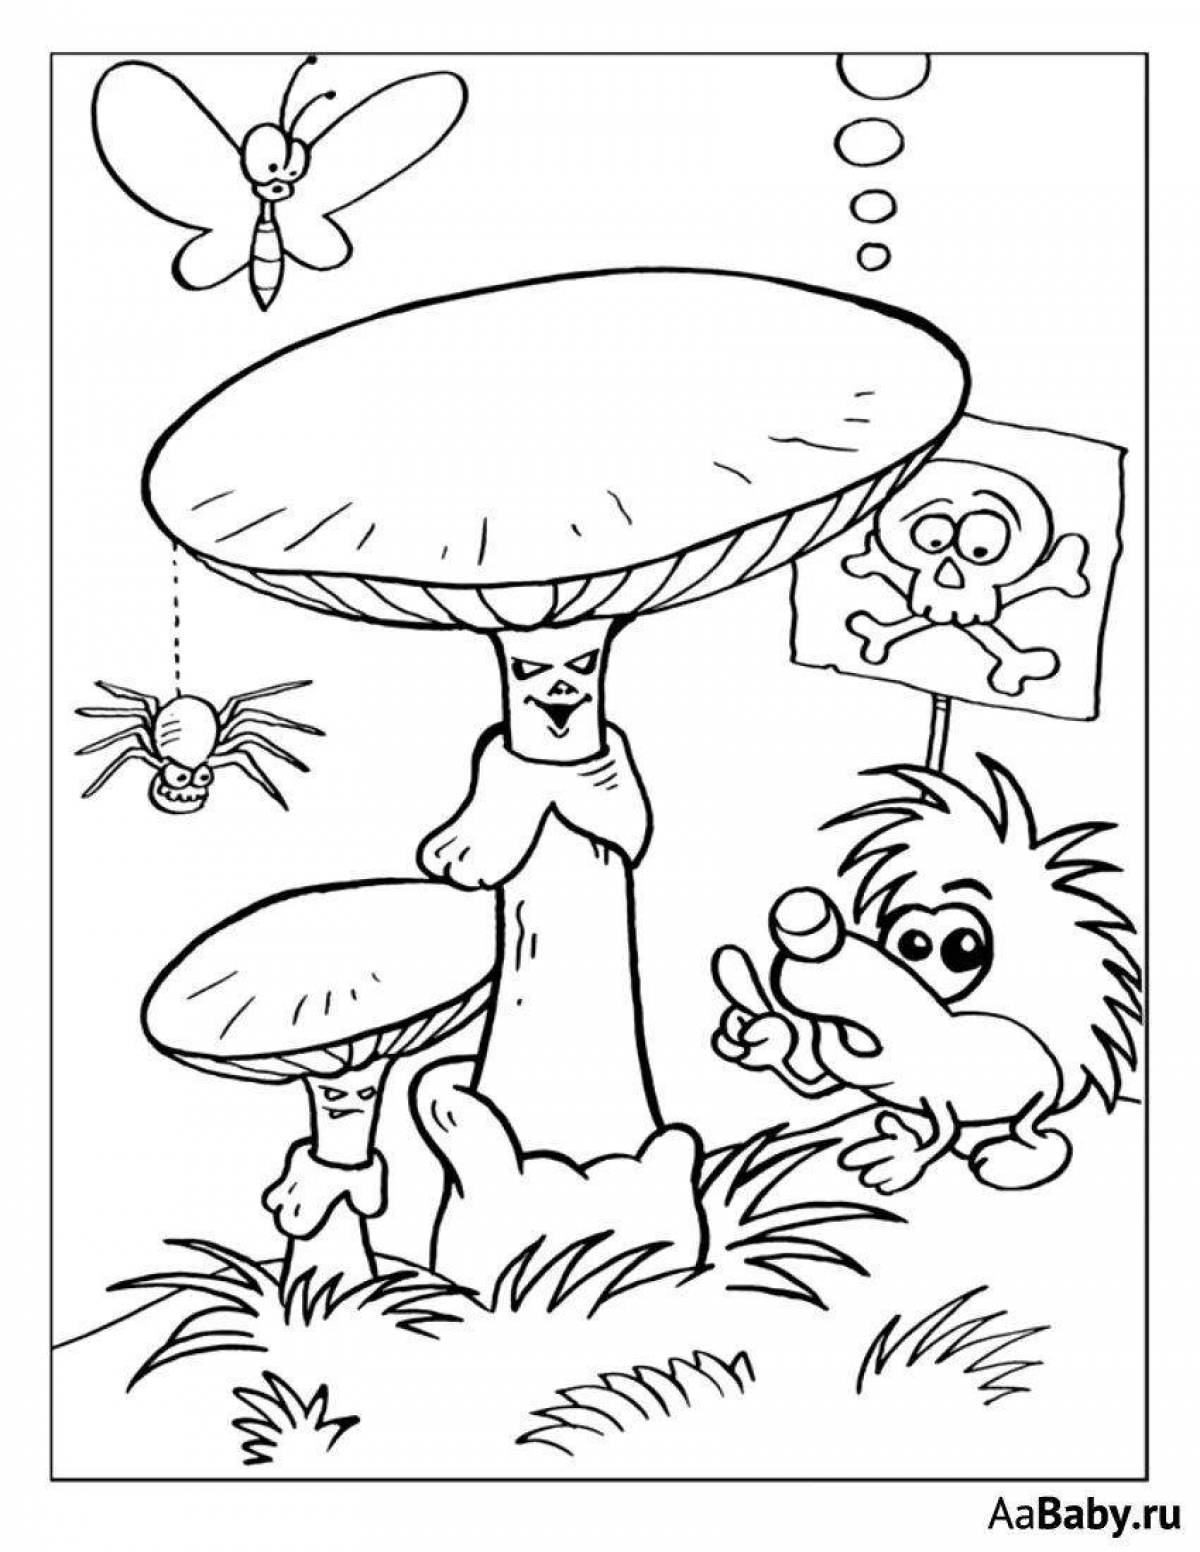 Playful toadstool mushrooms